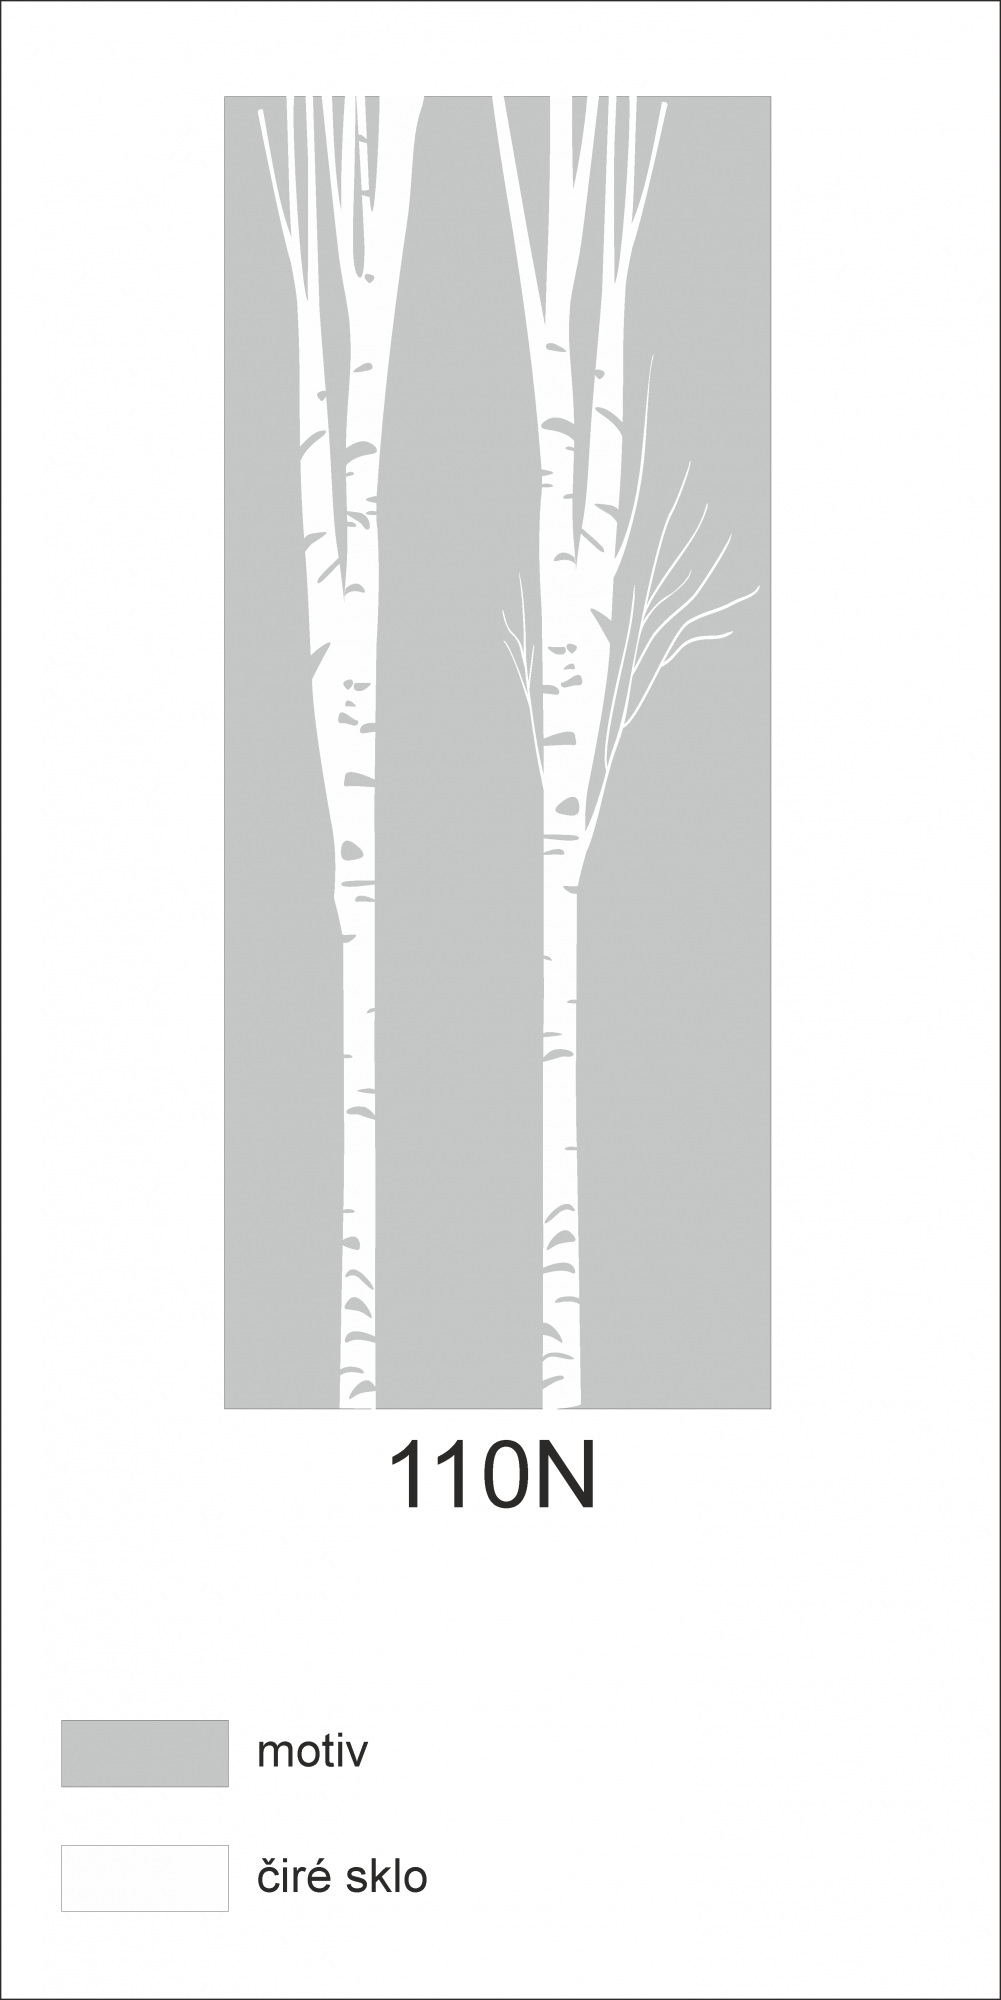 Možný motiv na skleněných dveřích nebo skleněných stěnách 110N - motiv stromů